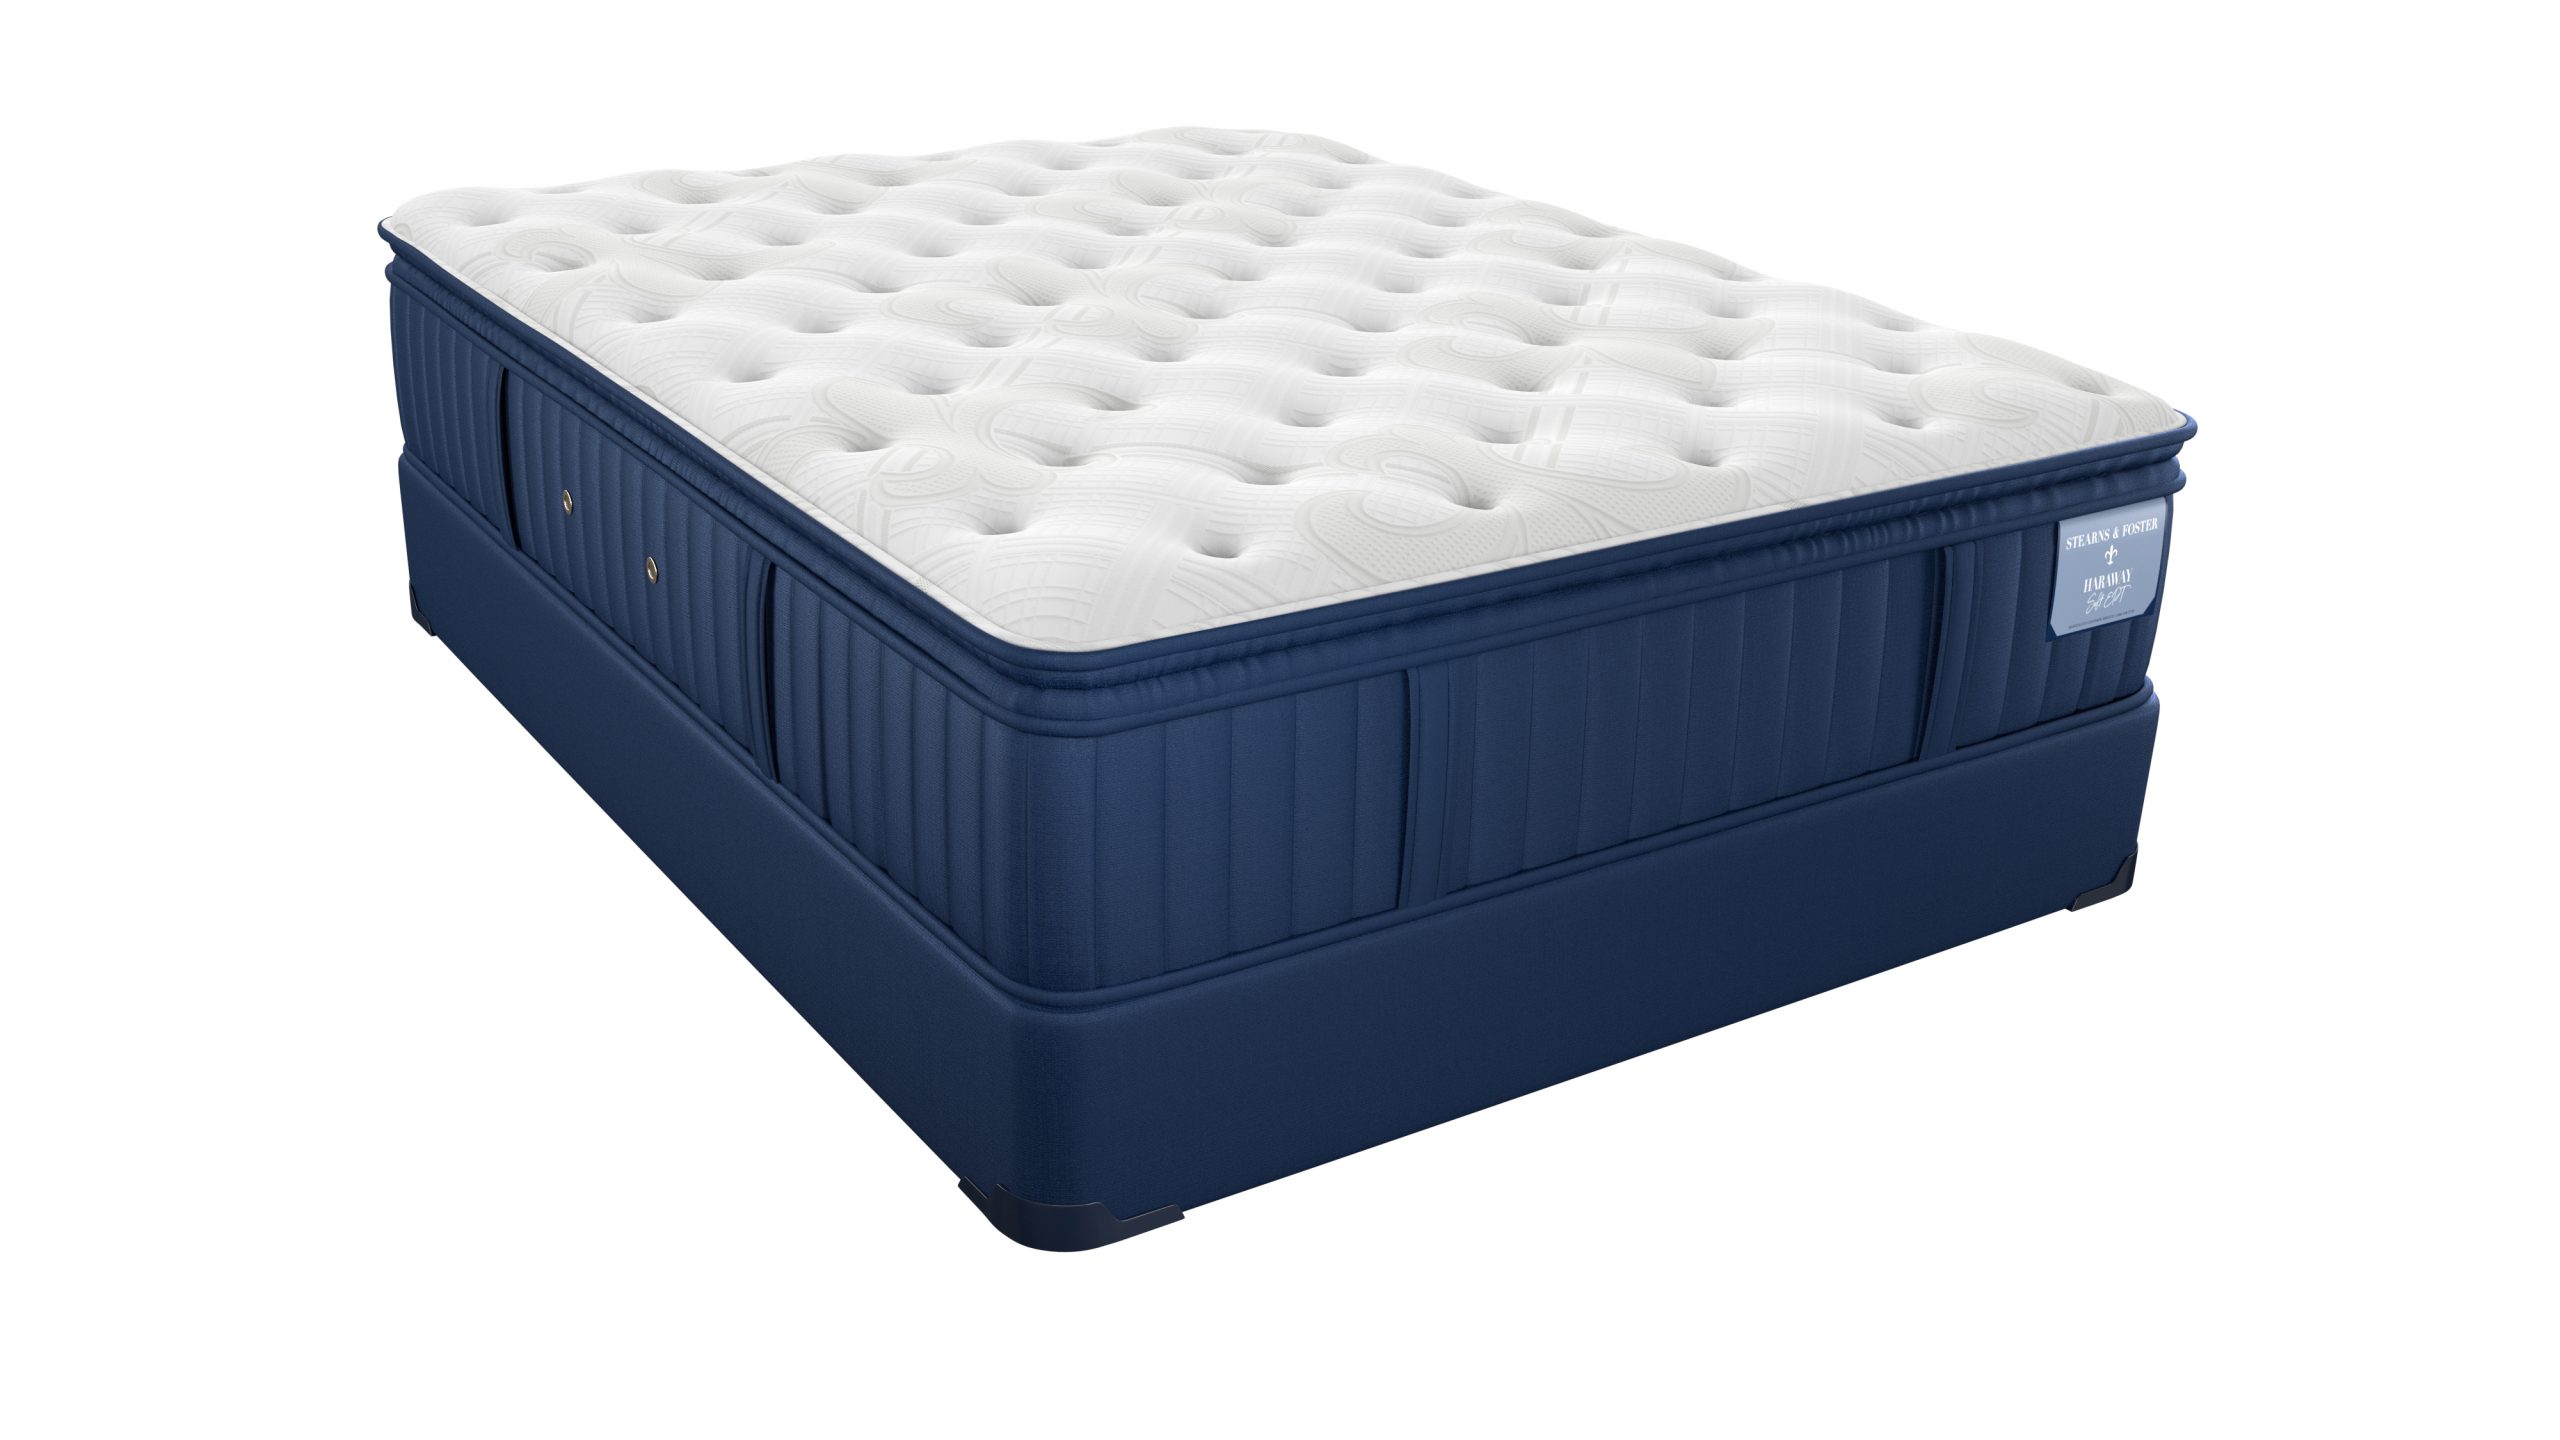 g s stearns luxury firm mattress